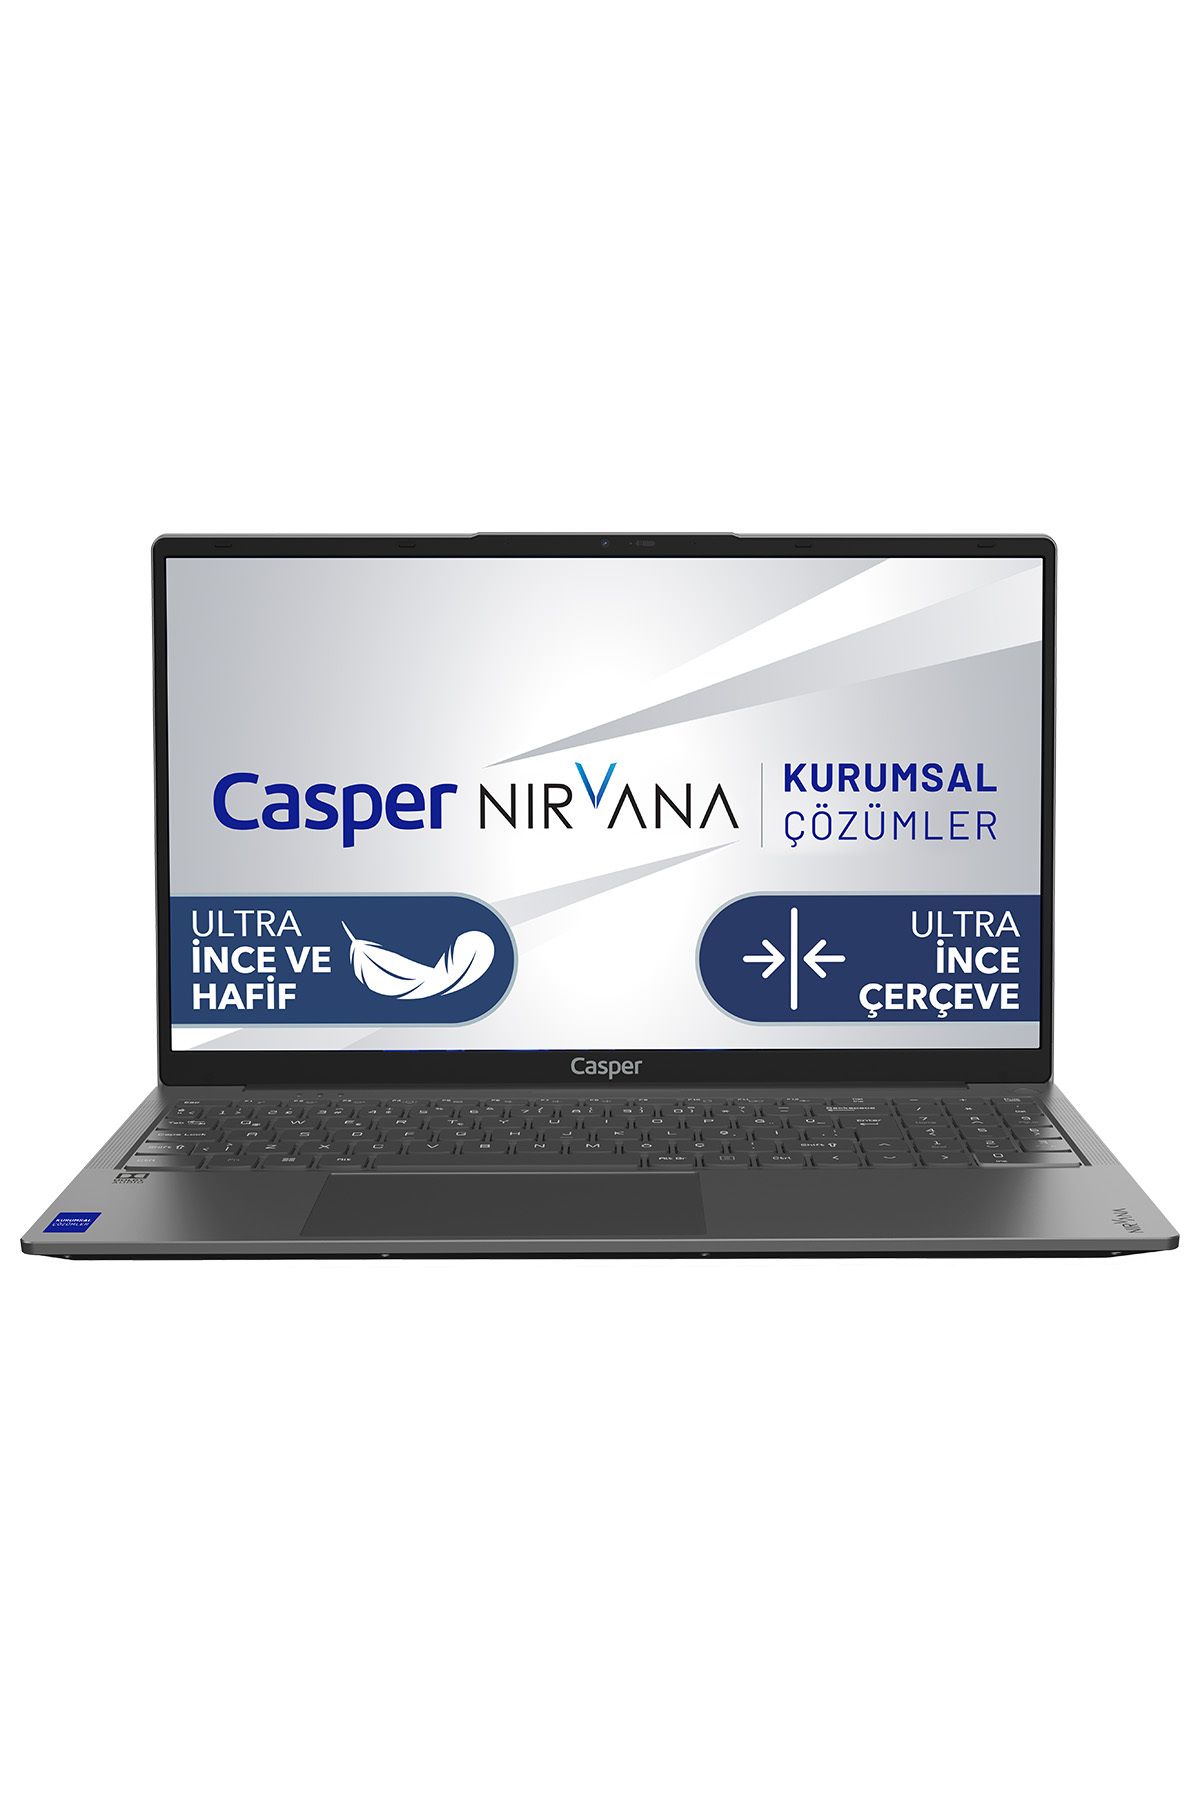 Casper Nirvana X700.1215-8v00x-g-f Intel Core I3-1215u 8gb Ram 500gb Nvme Ssd Freedos